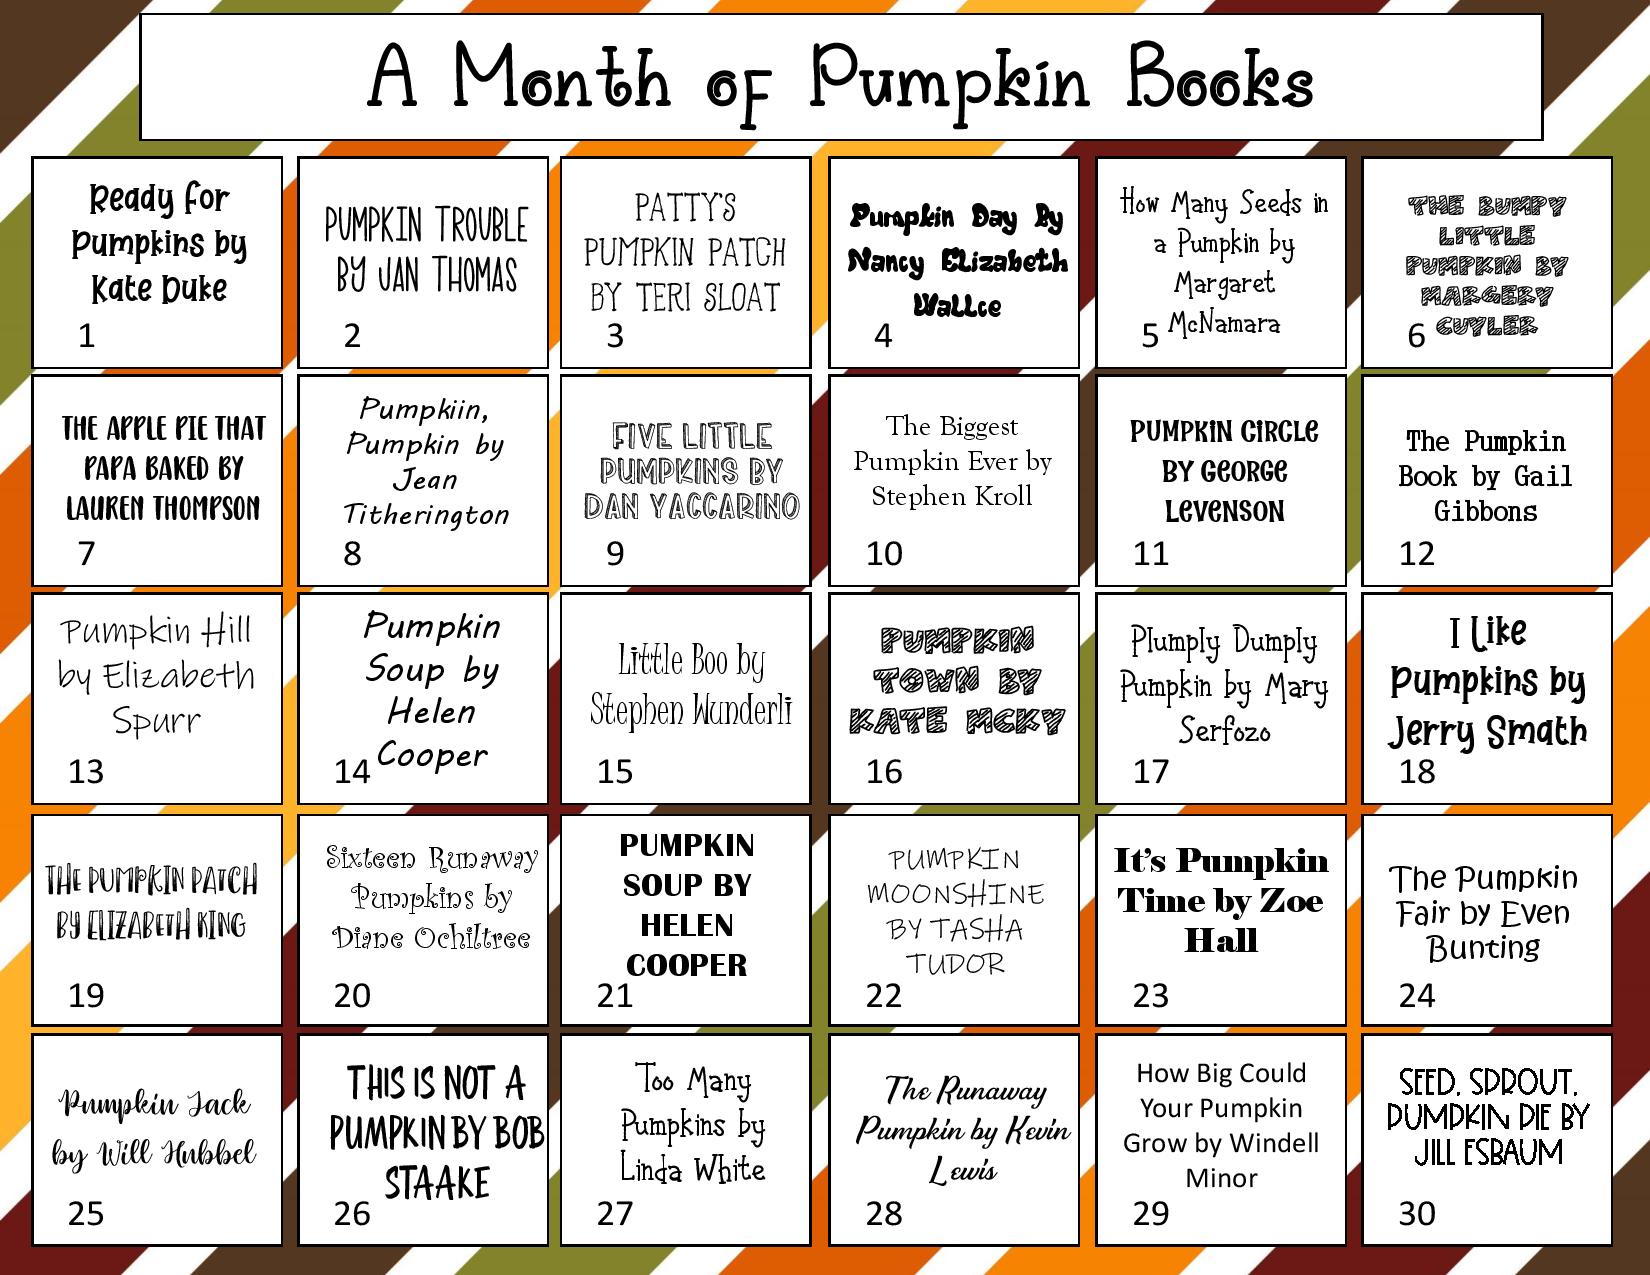 A Month of Pumpkin Books